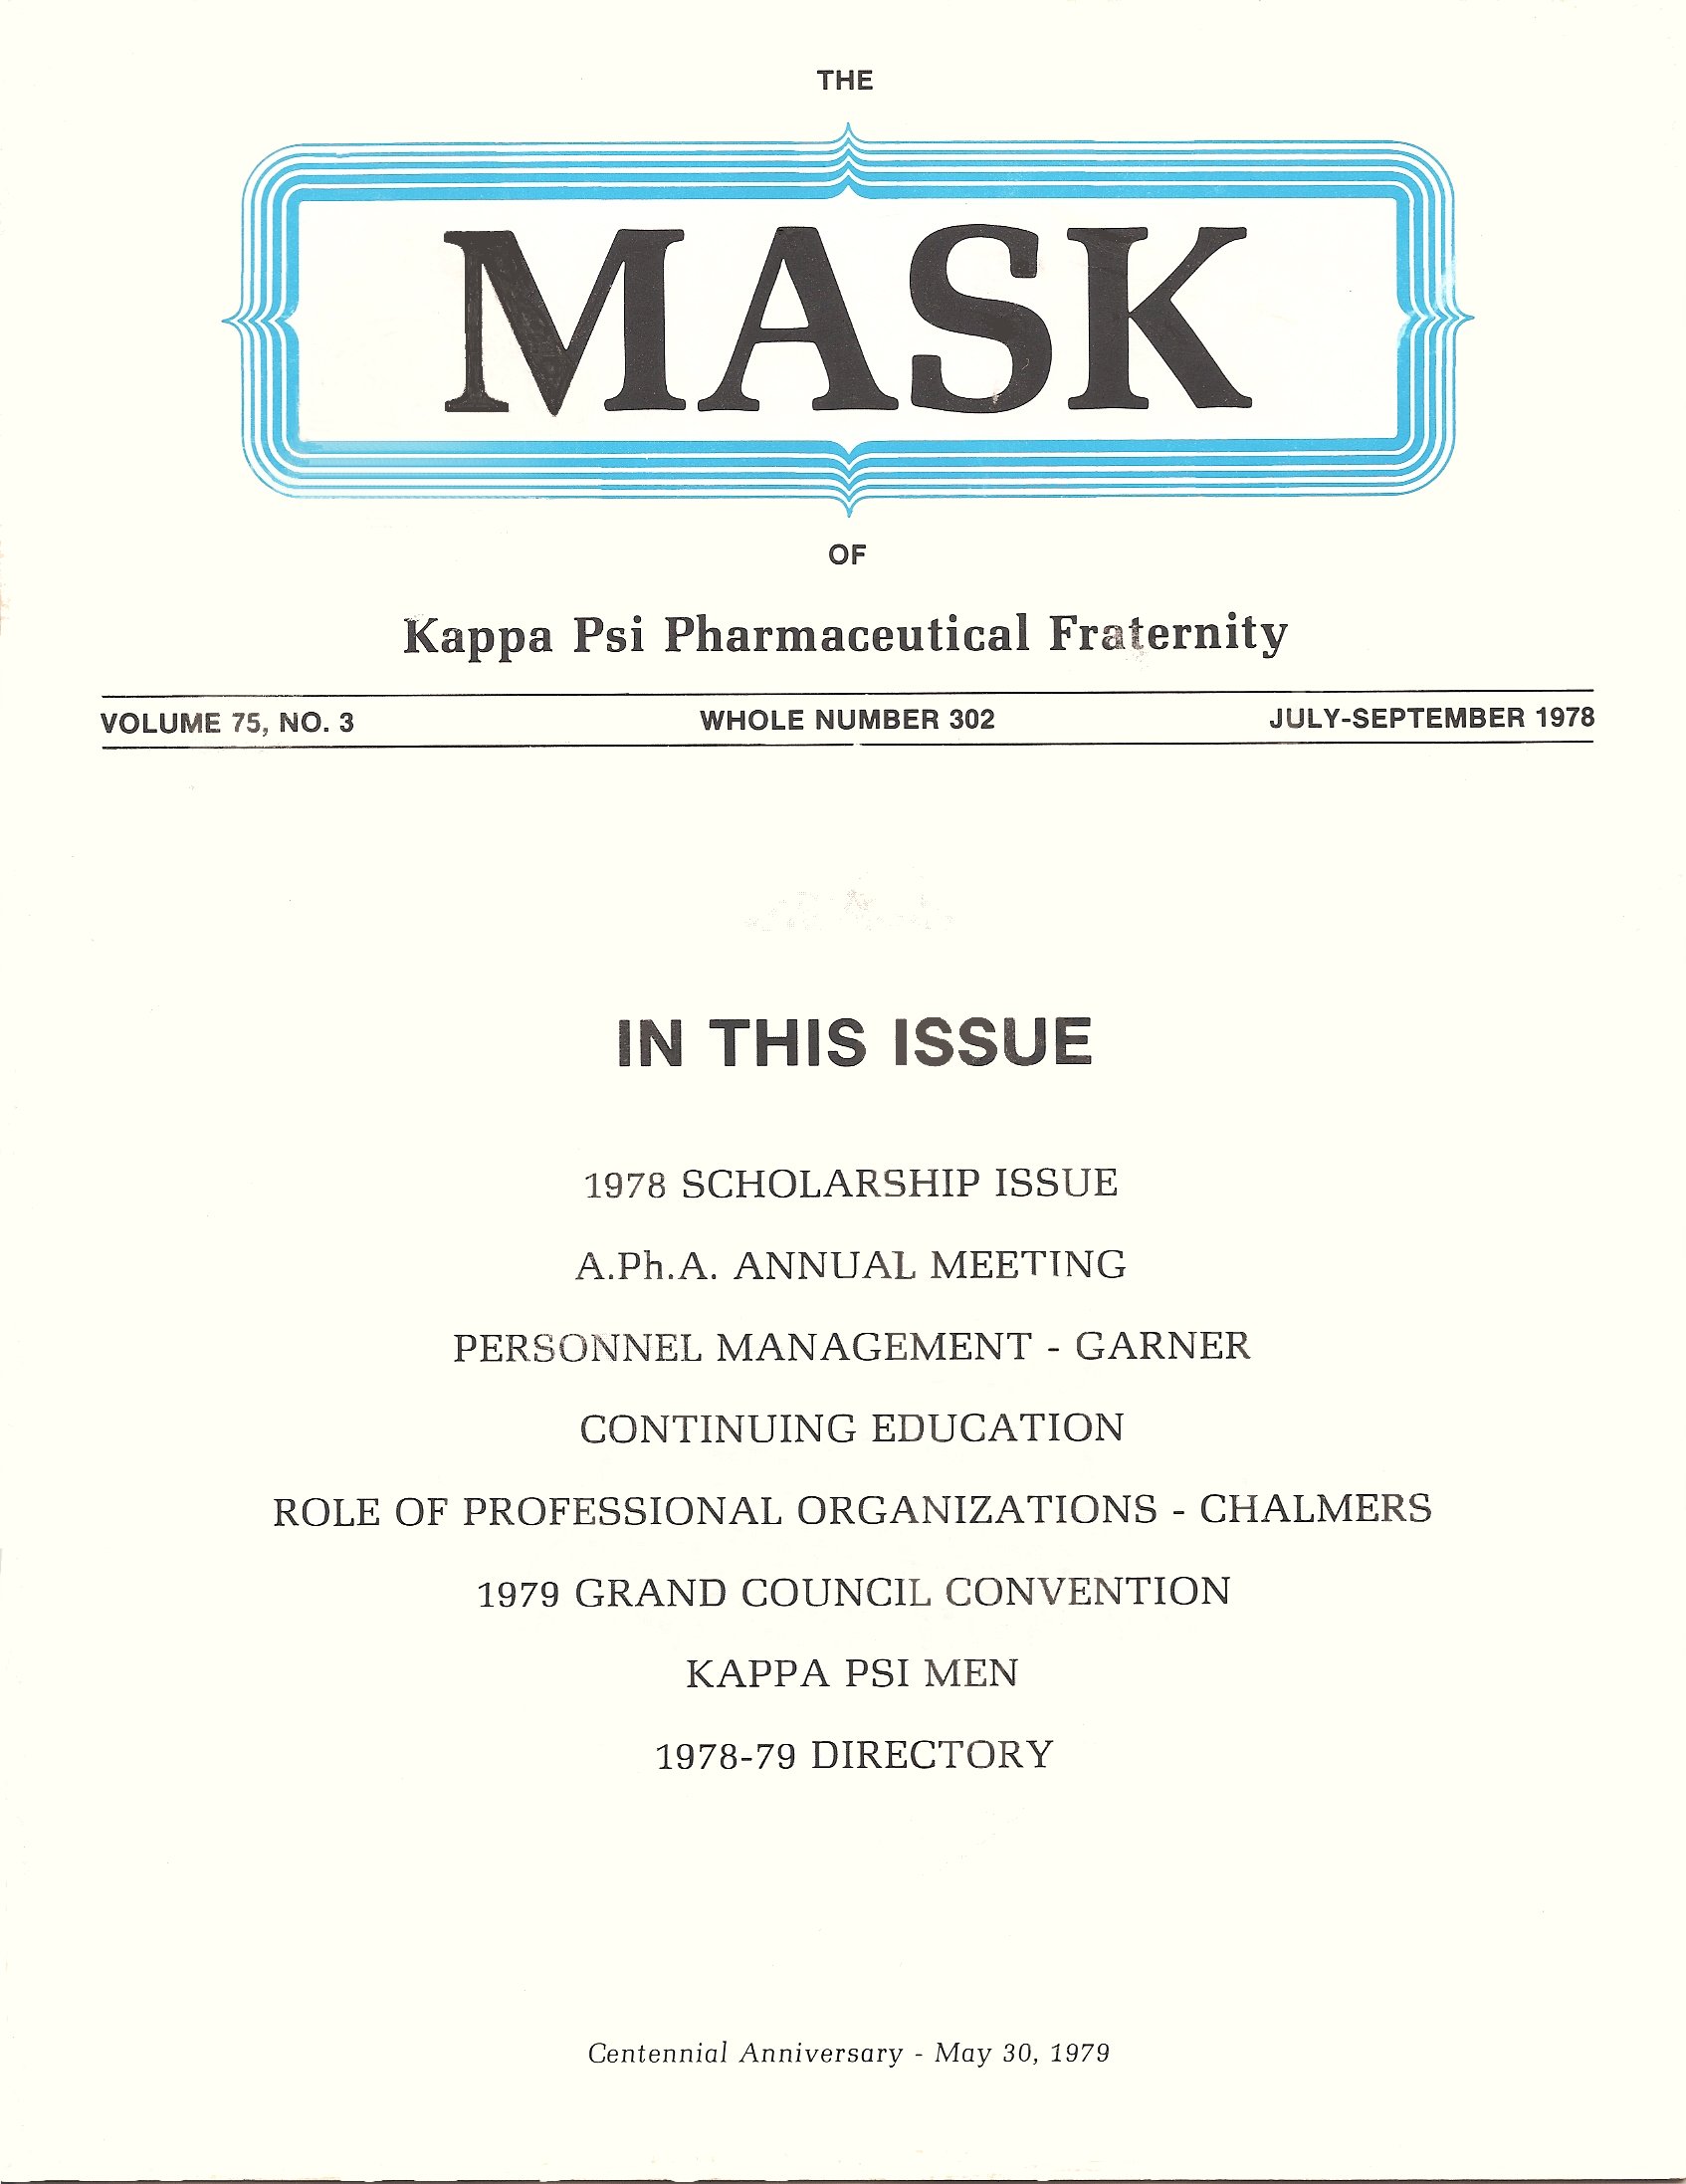 mask_cover_06_1978.jpg